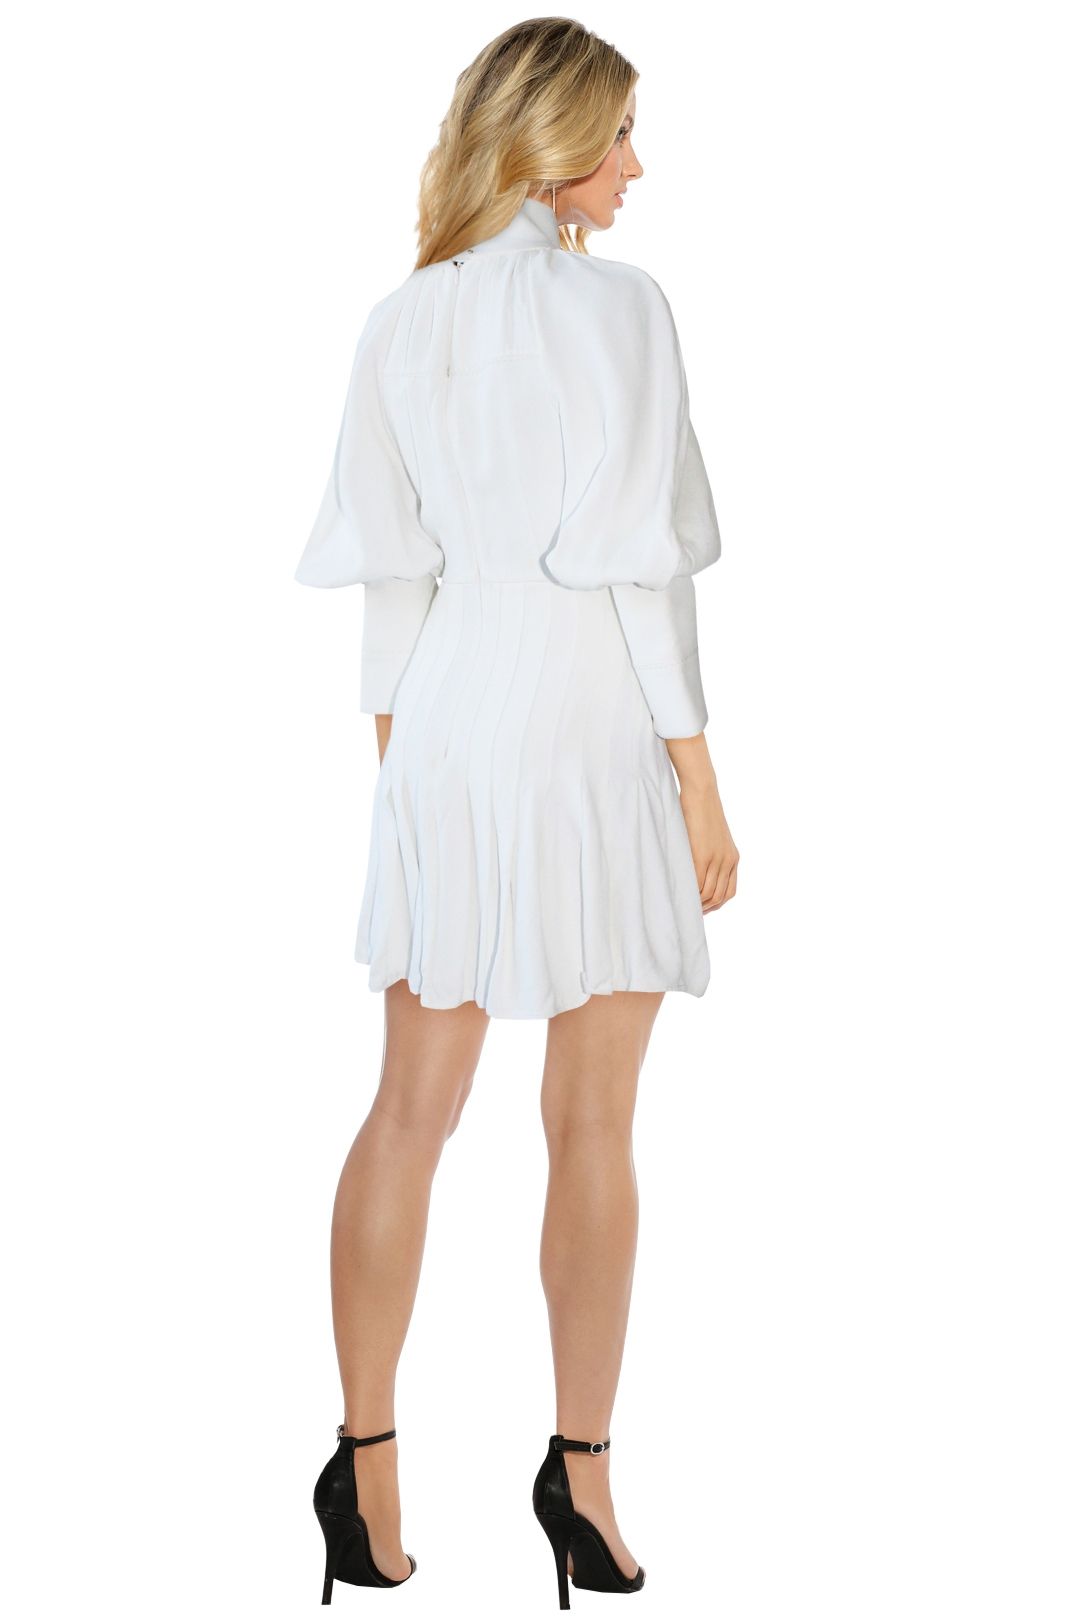 Ellery - Butler Voluminous Sleeve Dress - White - Back